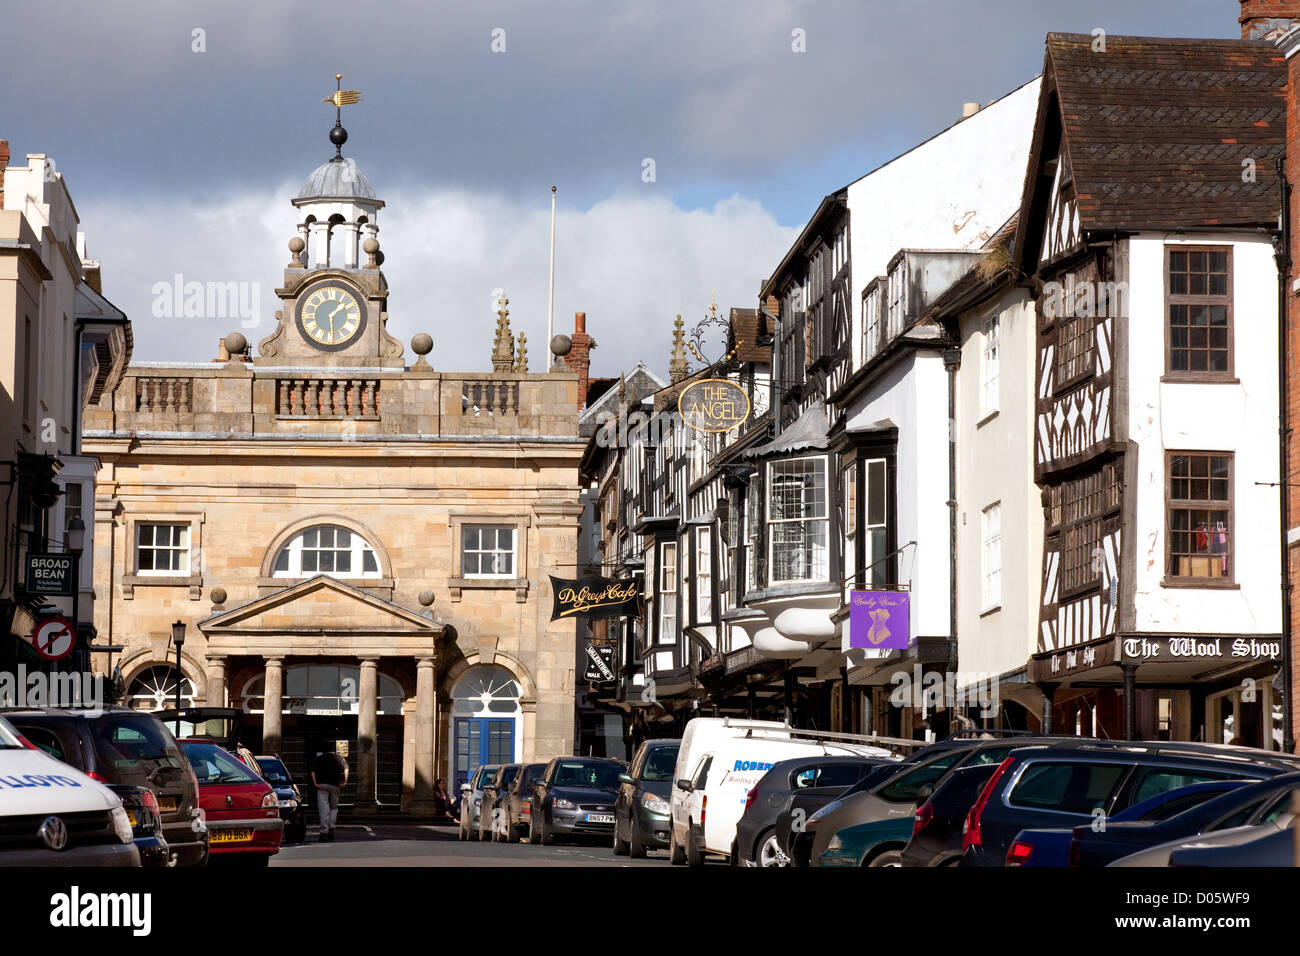 Broad Street, una calle del siglo xviii bien conservados en Ludlow Shropshire UK Foto de stock